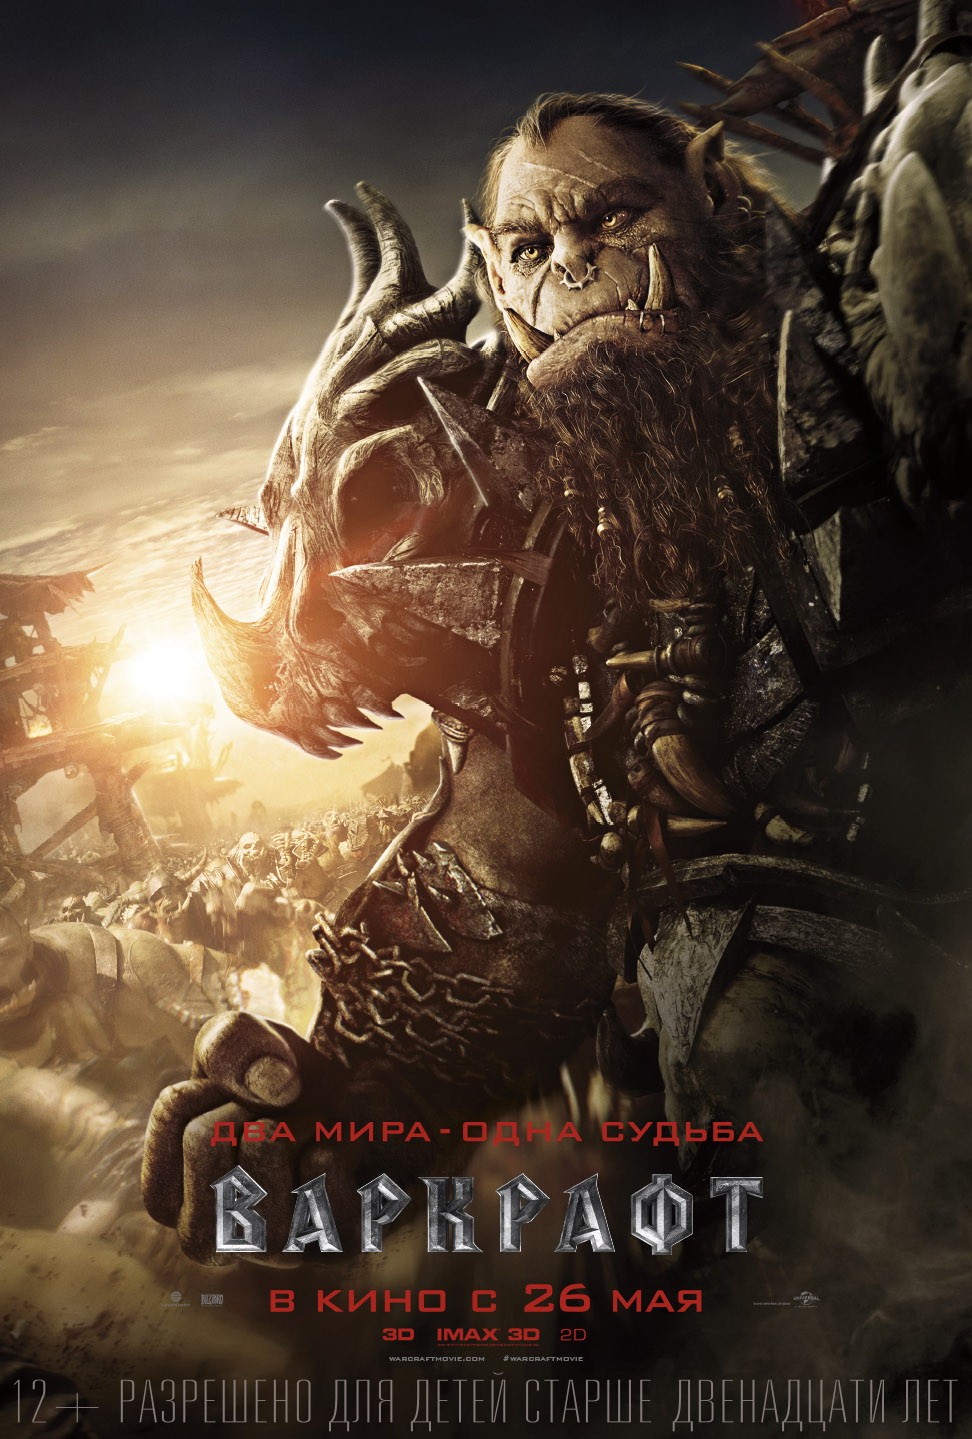 Фильм Warcraft (Варкрафт) - впечатления после просмотра 